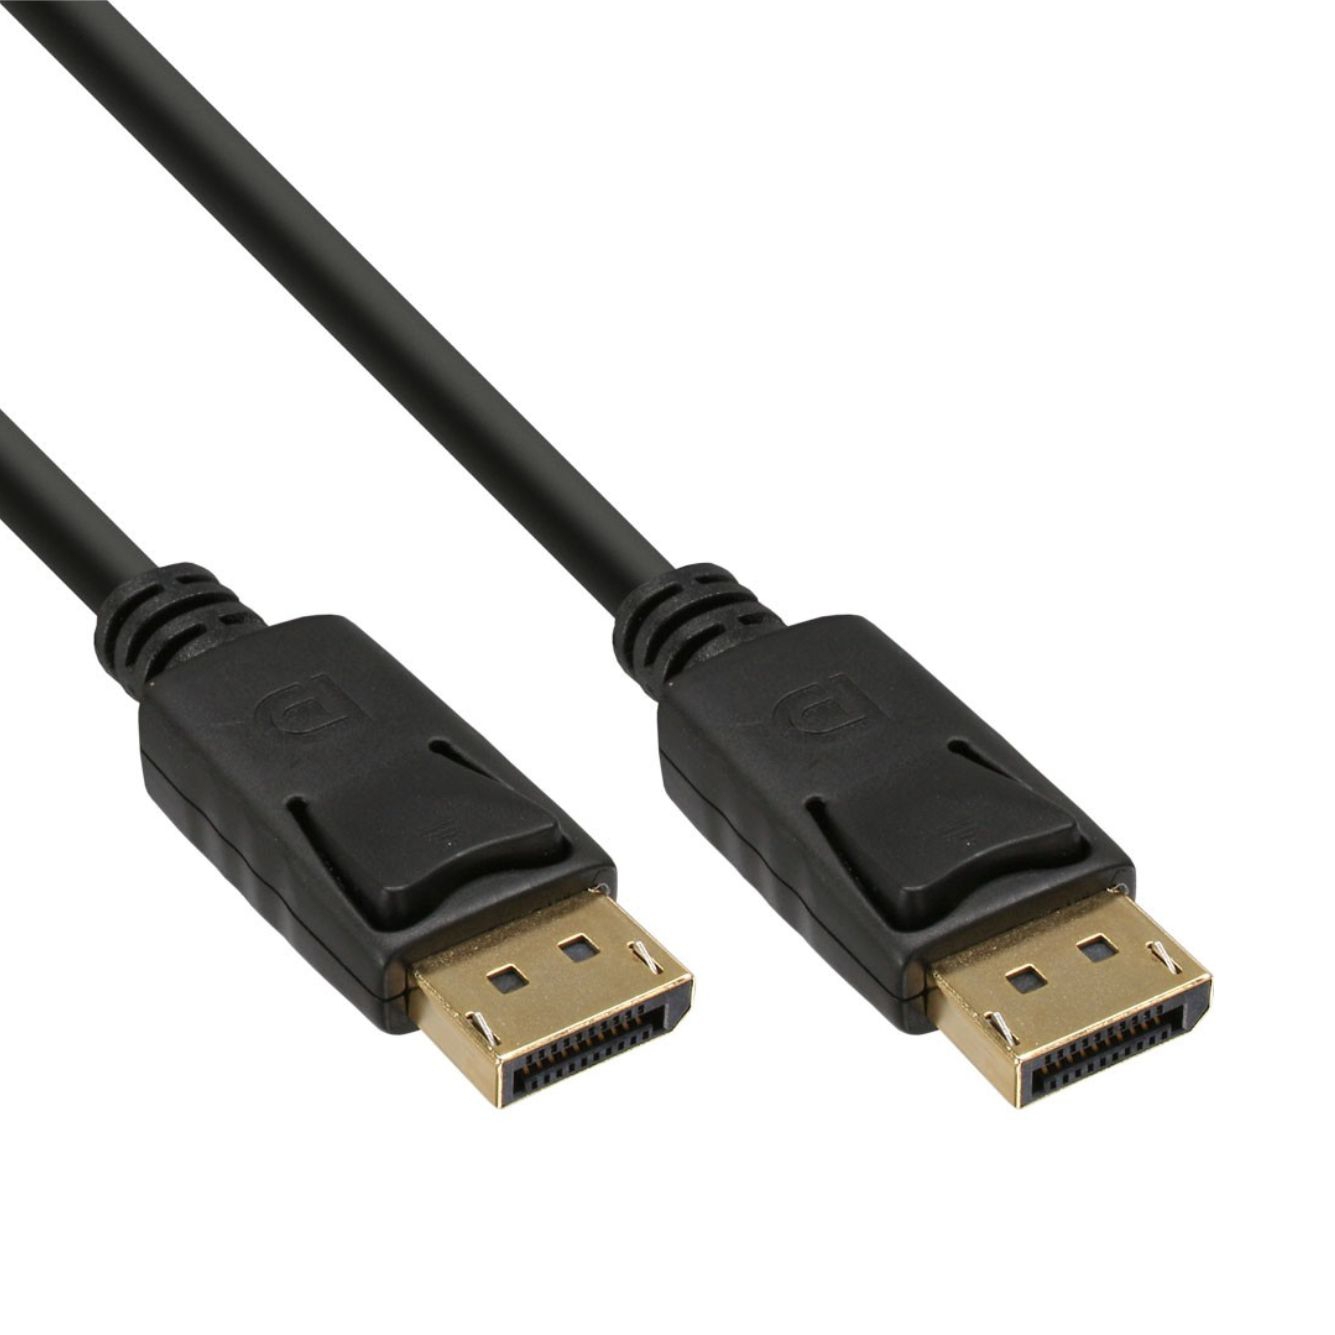 DisplayPort cable 4K 60Hz PREMIUM quality 5m